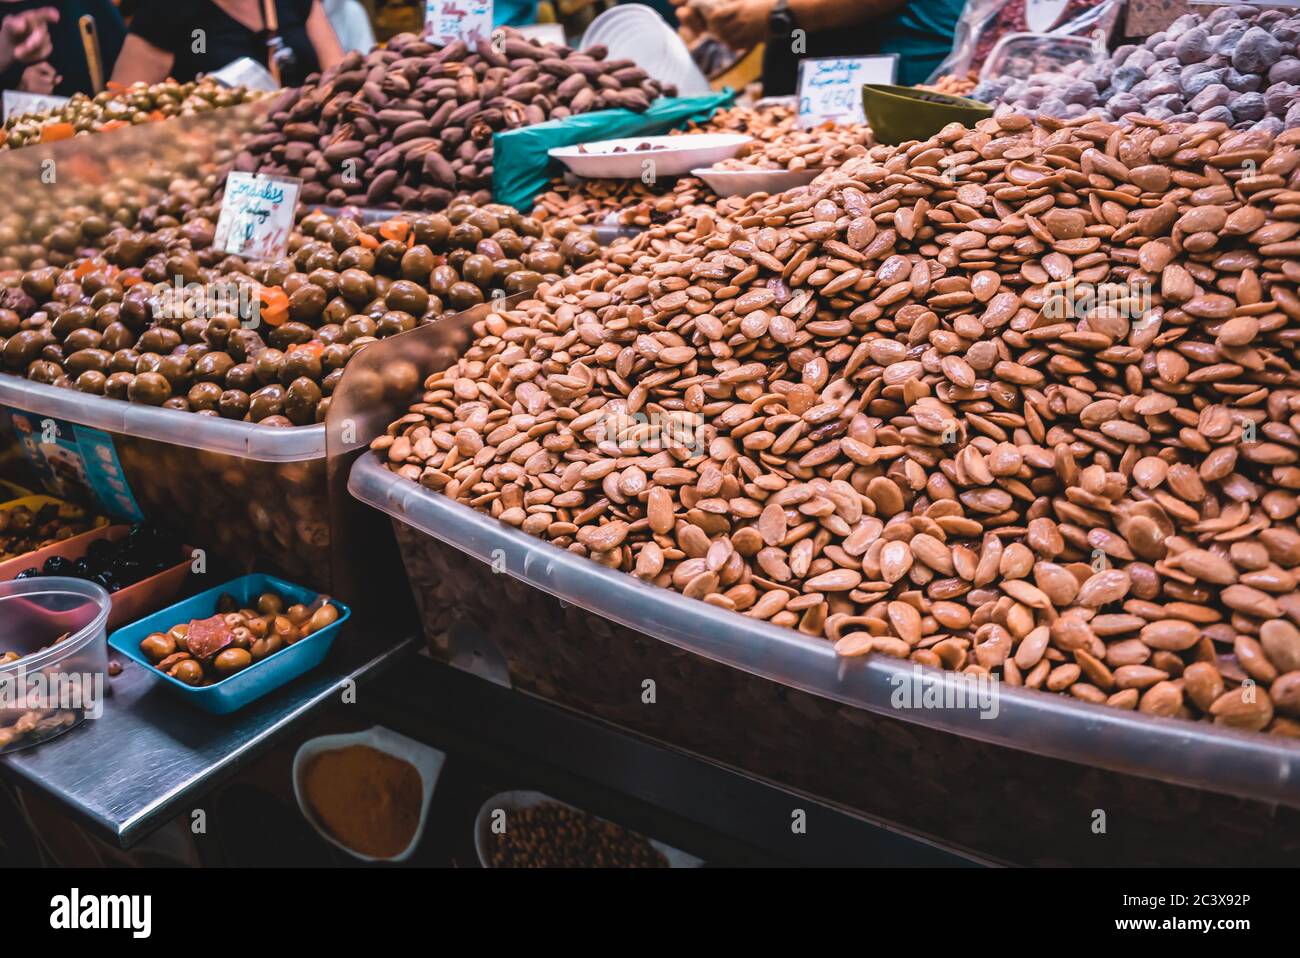 La nourriture locale populaire - noix caramélisées et amande - dans une cabine sur un marché agricole à l'intérieur de Malaga, en Espagne. Un choix et un régal de plats typiquement espagnols Banque D'Images